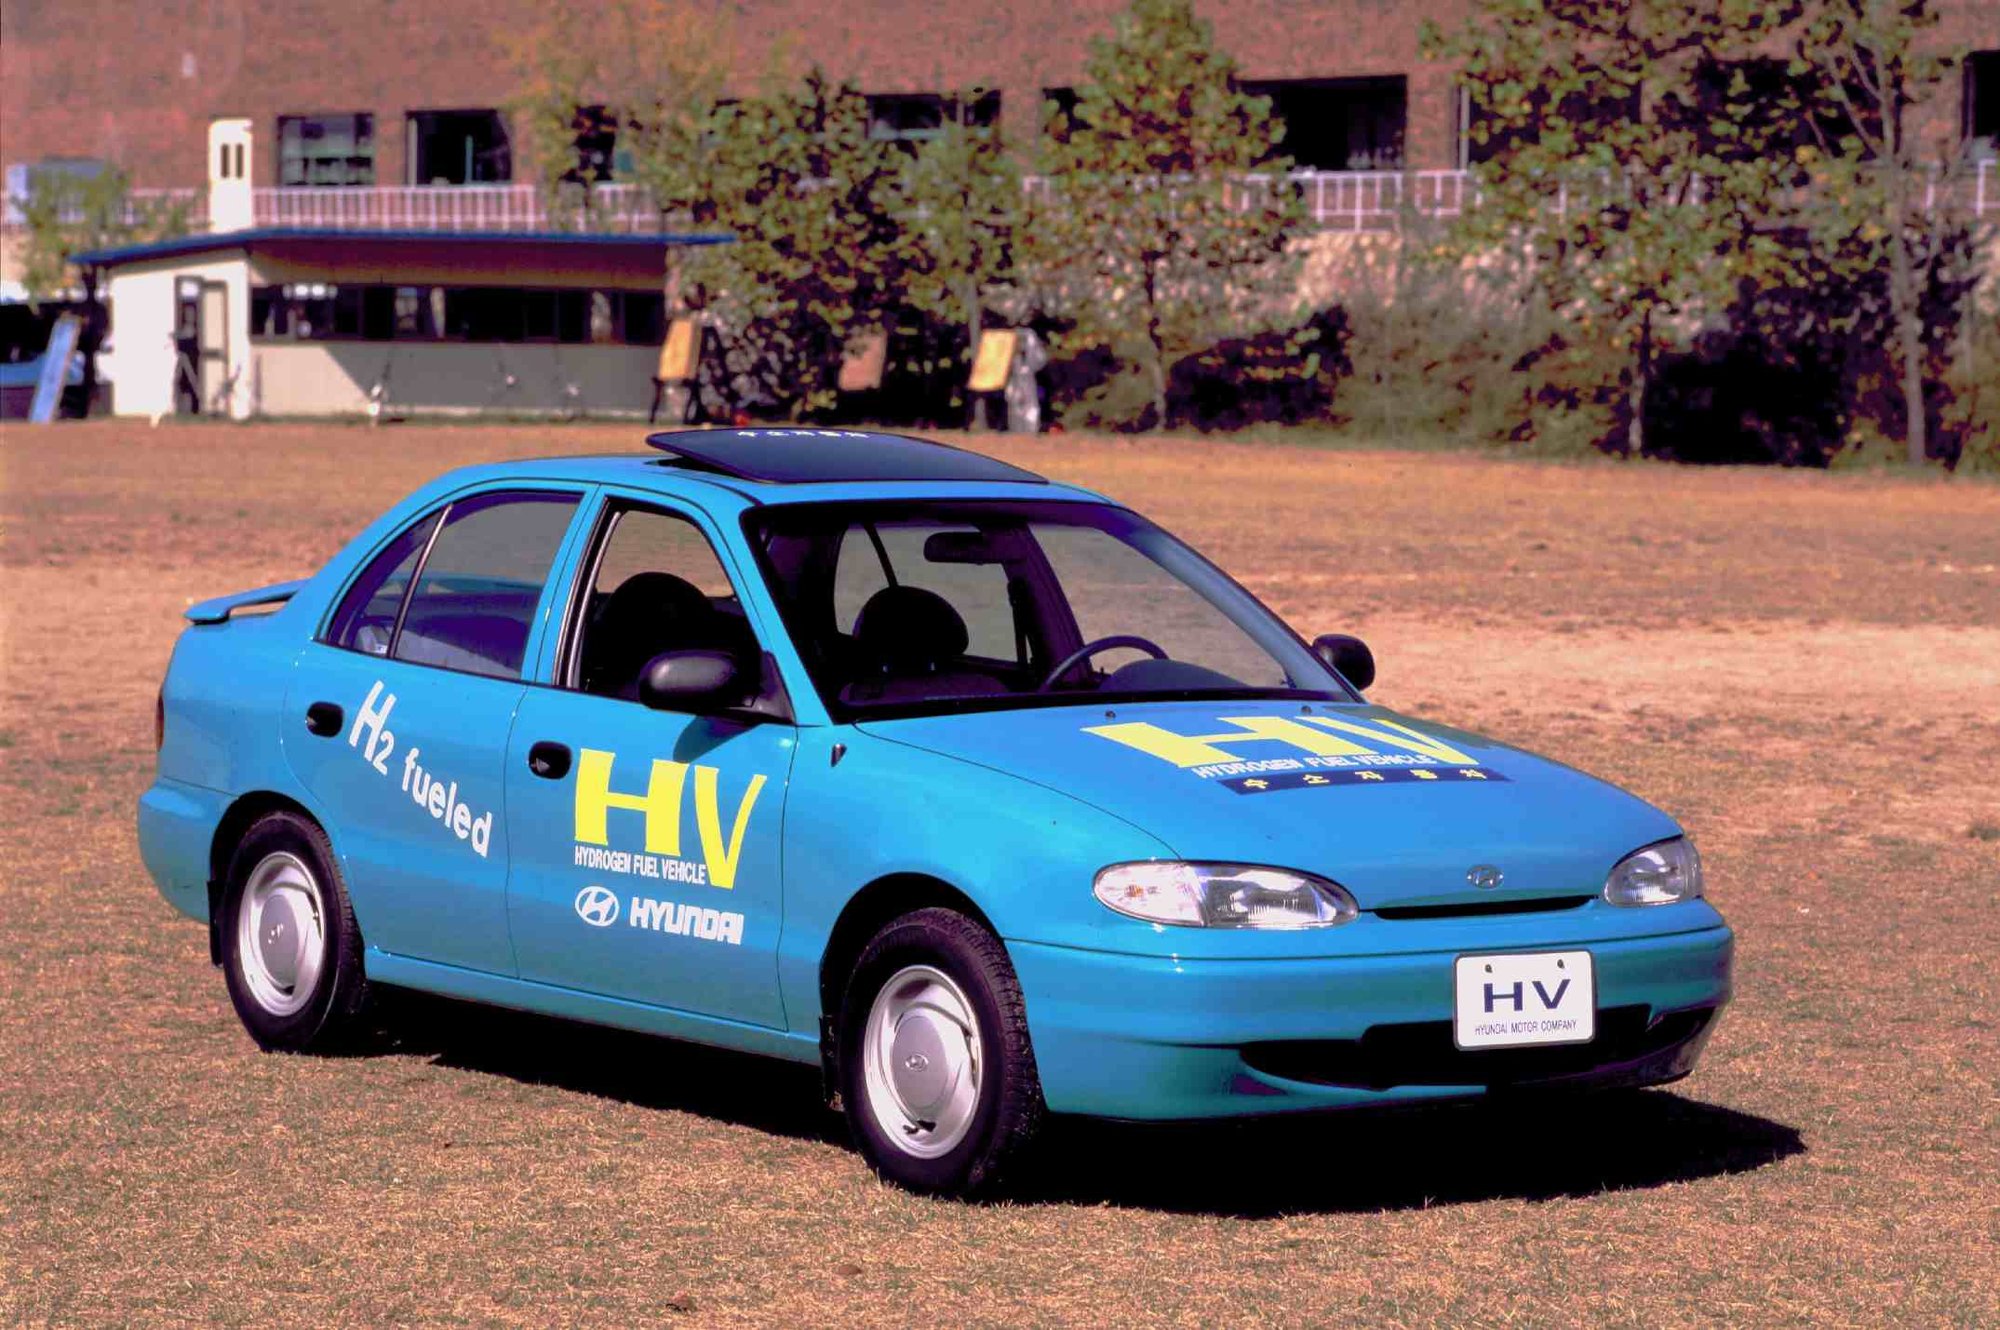 Koncept elektromobilu Hyundai Accent EV nabízel dojezd 390 kilometrů a nejvyšší rychlost 140 km/h